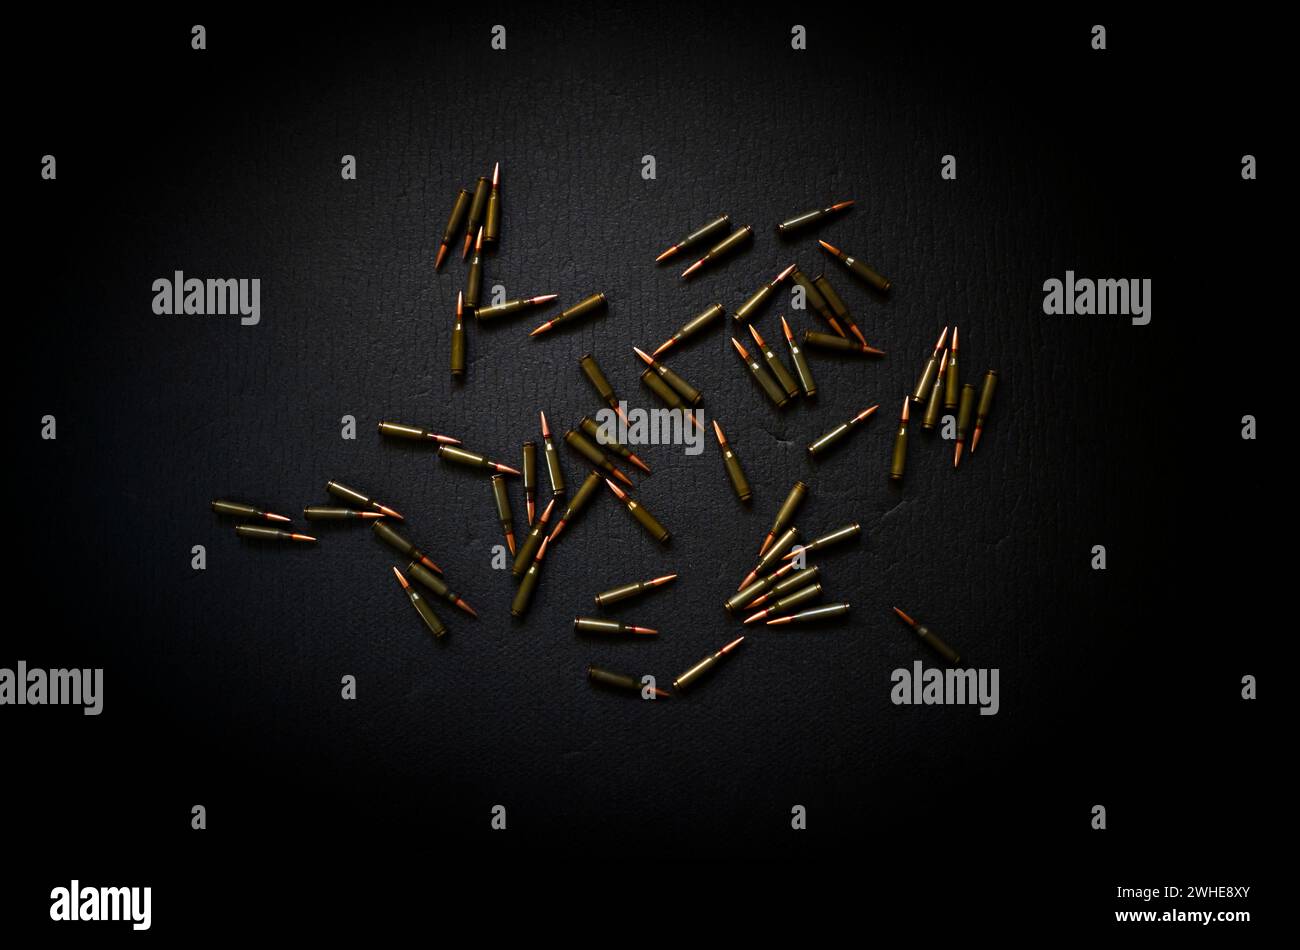 Auf einer dunklen Oberfläche verstreut sind Kugeln, Patronen für ein Kalaschnikow-Sturmgewehr. Stockfoto